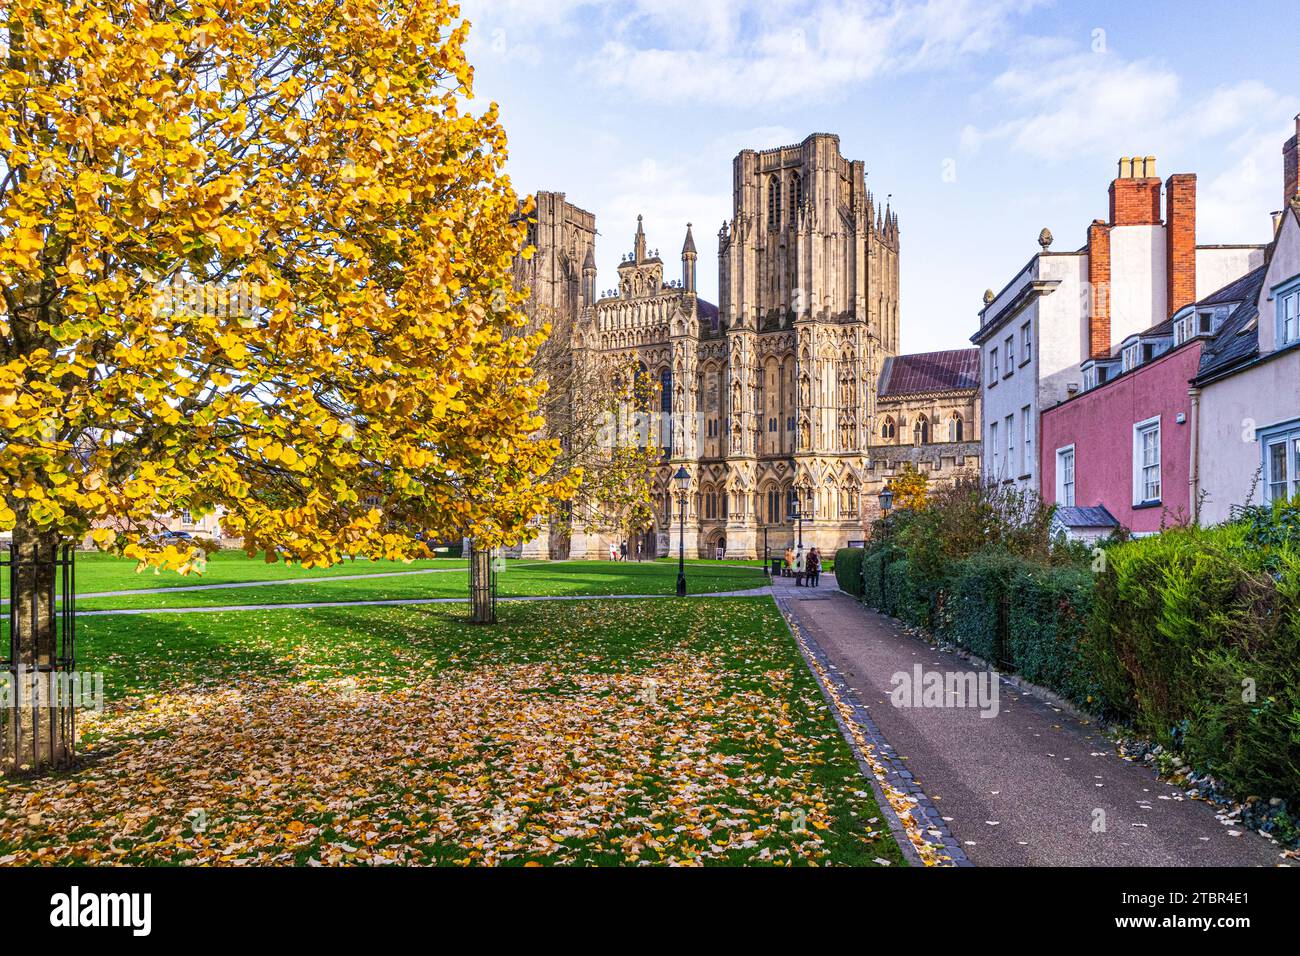 Couleurs d'automne sur le vert cathédrale devant la façade ouest de la cathédrale Wells, Wells, Somerset, Angleterre Royaume-Uni Banque D'Images